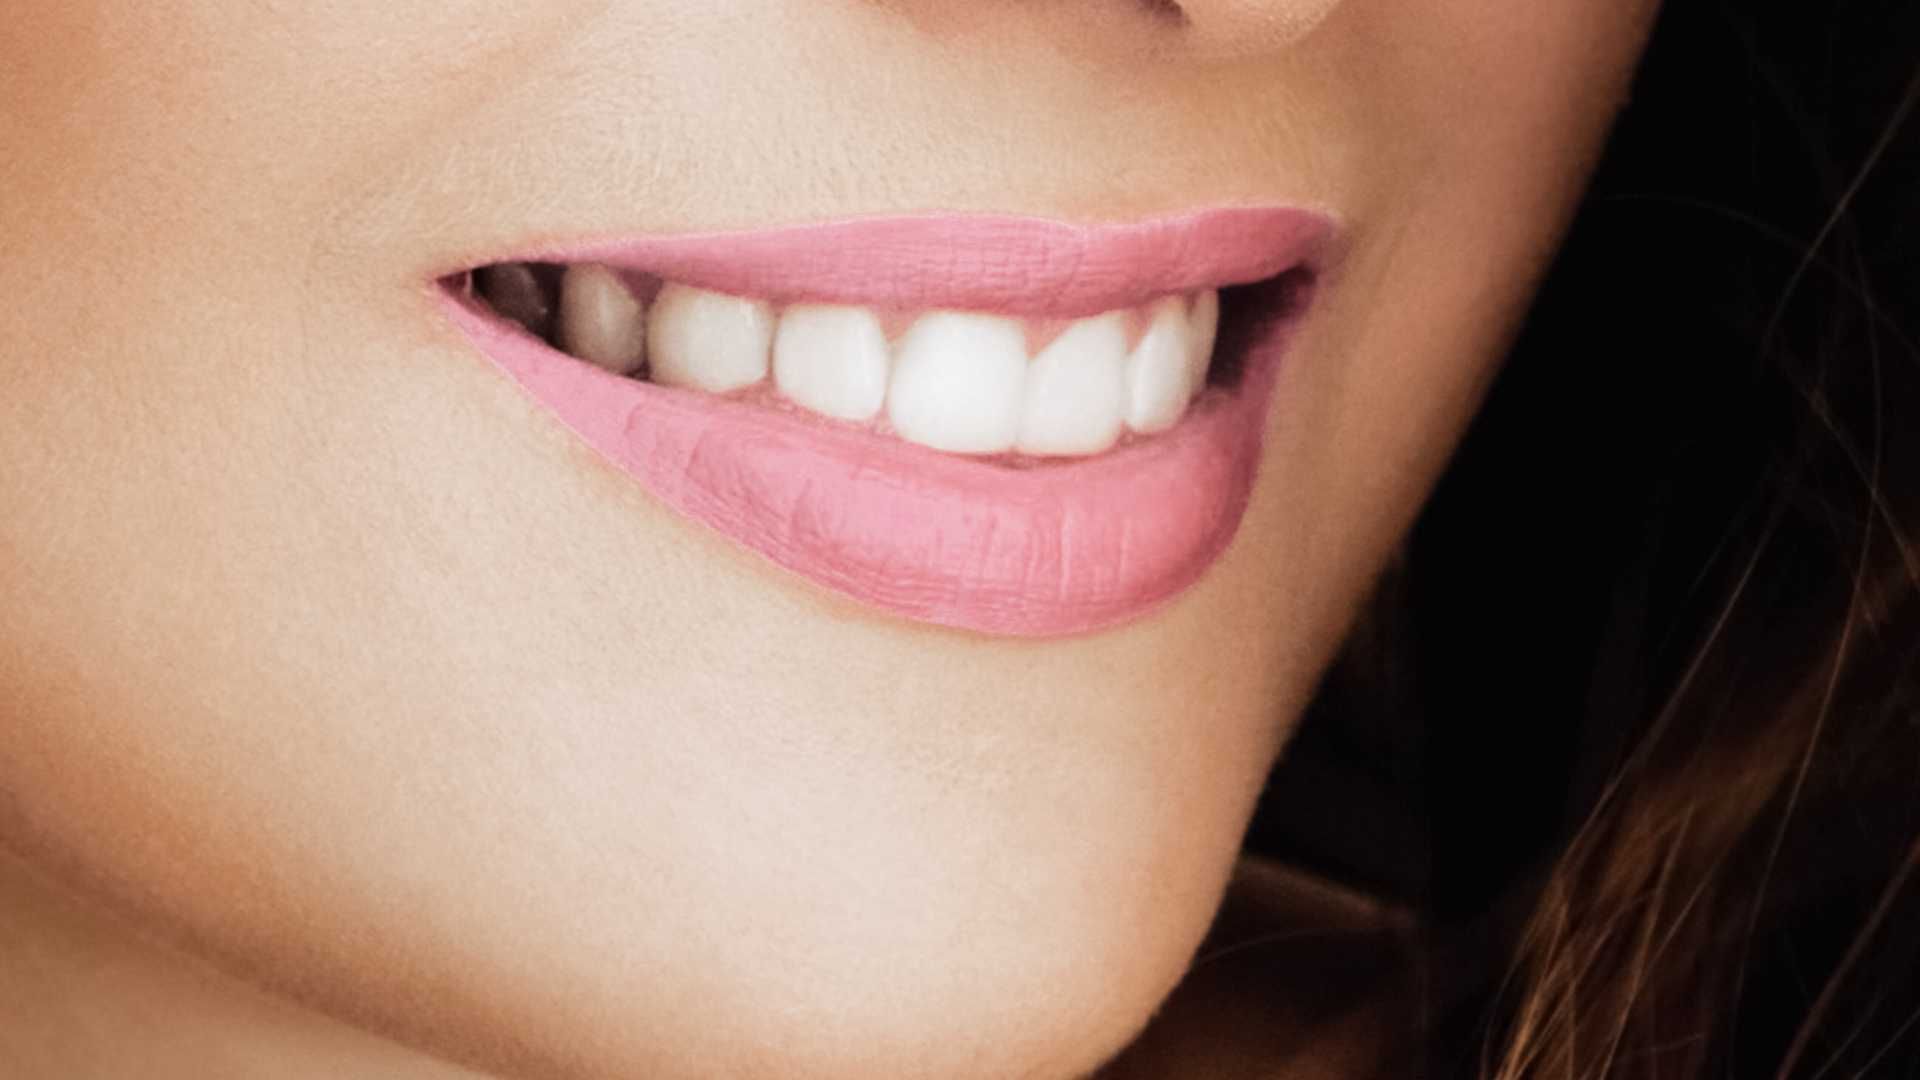 پرکردن دندان شیری دو سطحی با کامپوزیت ژاپنی دکتر مهسا حیدری در تهران 1